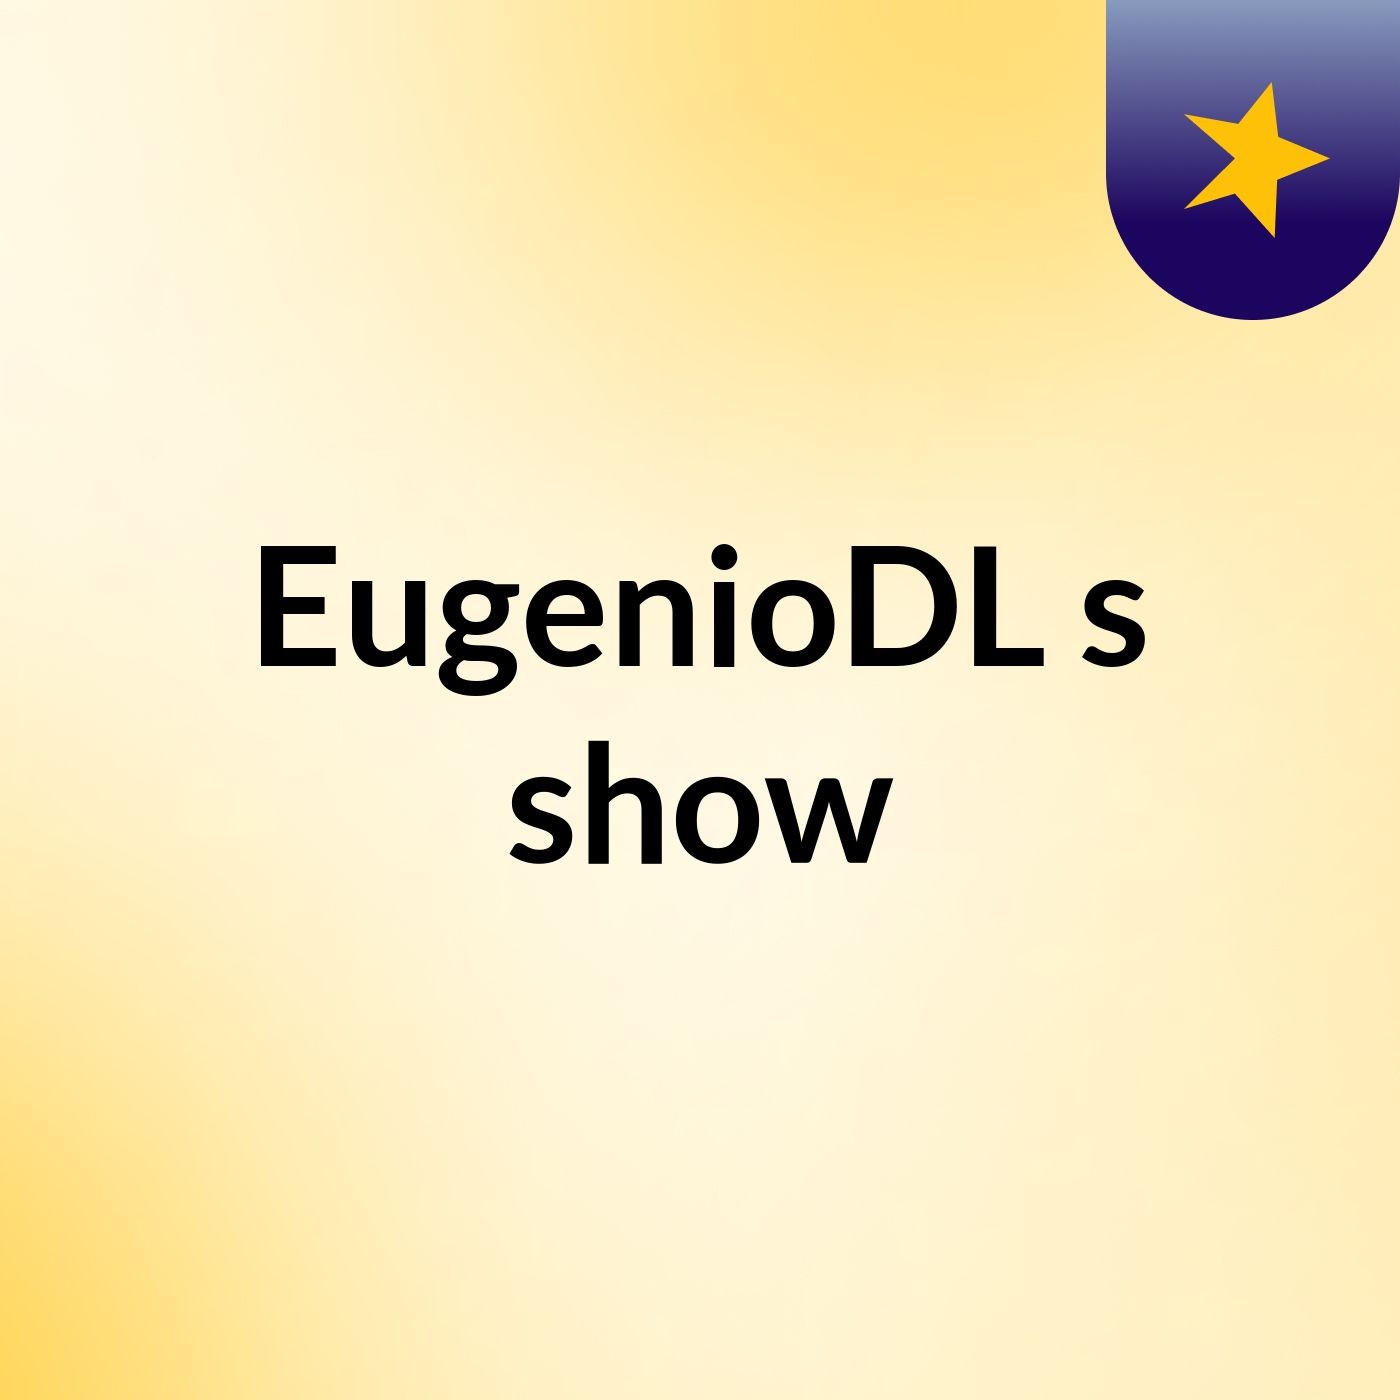 EugenioDL's show